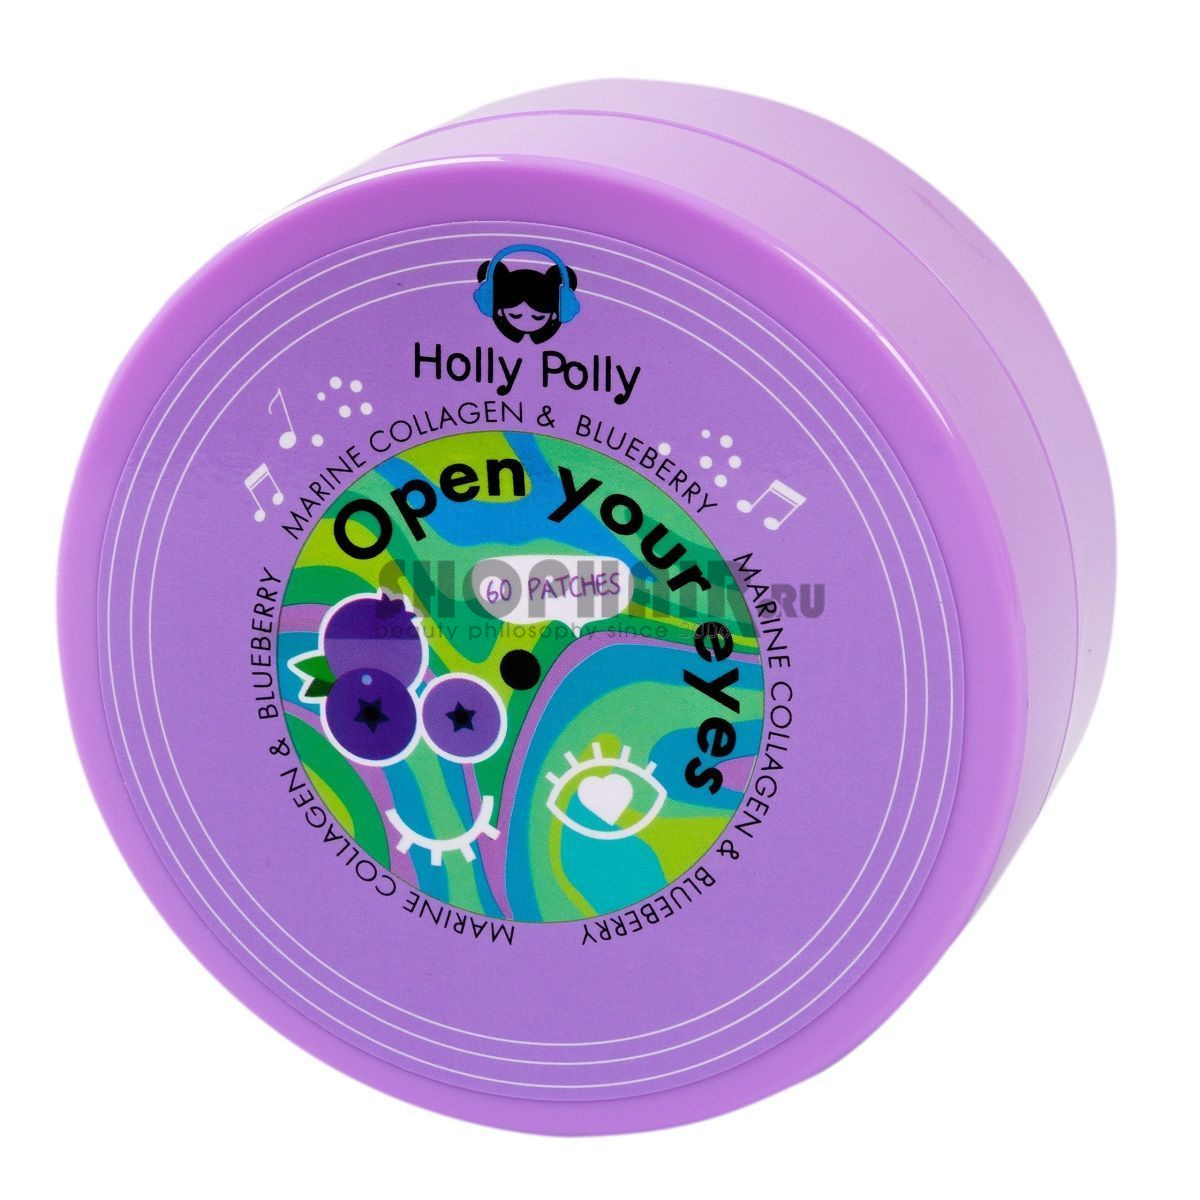 Holly Polly Music Collection Open Your Eyes - Гидрогелевые патчи для глаз с Морским Коллагеном и экстрактом Черники (Увлажнение и анти-эйдж эффект) 60 шт Holly Polly (Россия) купить по цене 299 руб.